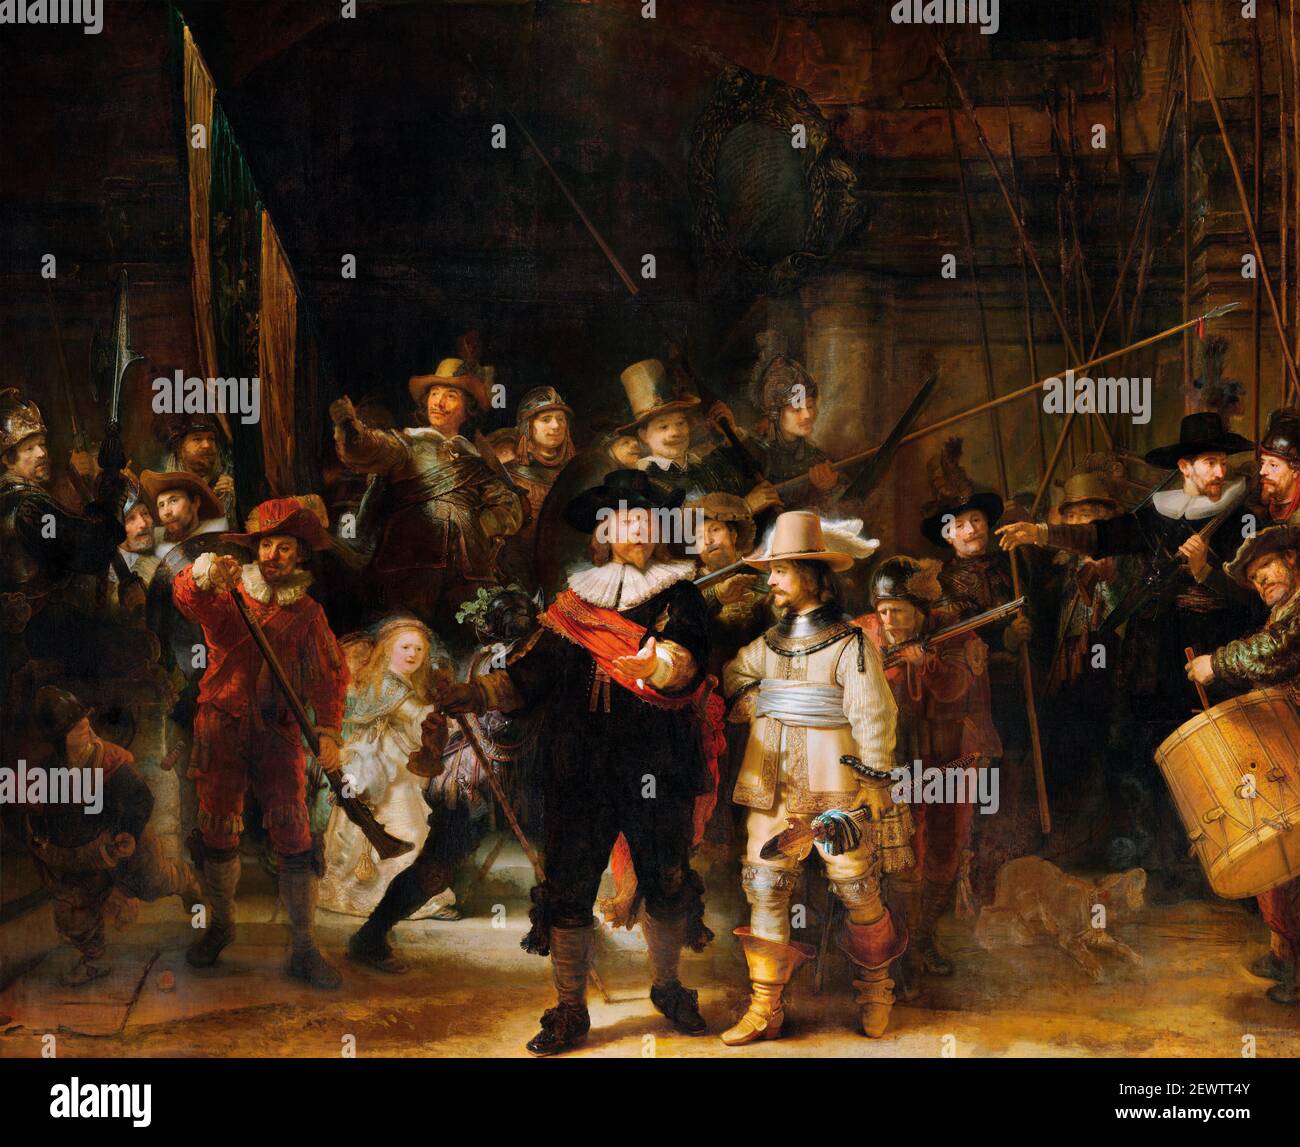 Rembrandt, Nachtwache. Gemälde mit dem Titel die Nachtwache (Milizgesellschaft des II. Bezirks unter dem Kommando von Kapitän Frans Banninck Cocq) von Rembrandt van Rijn (1606-1669), Öl auf Leinwand, 1642. Nachtwache, Rembrandt. Stockfoto